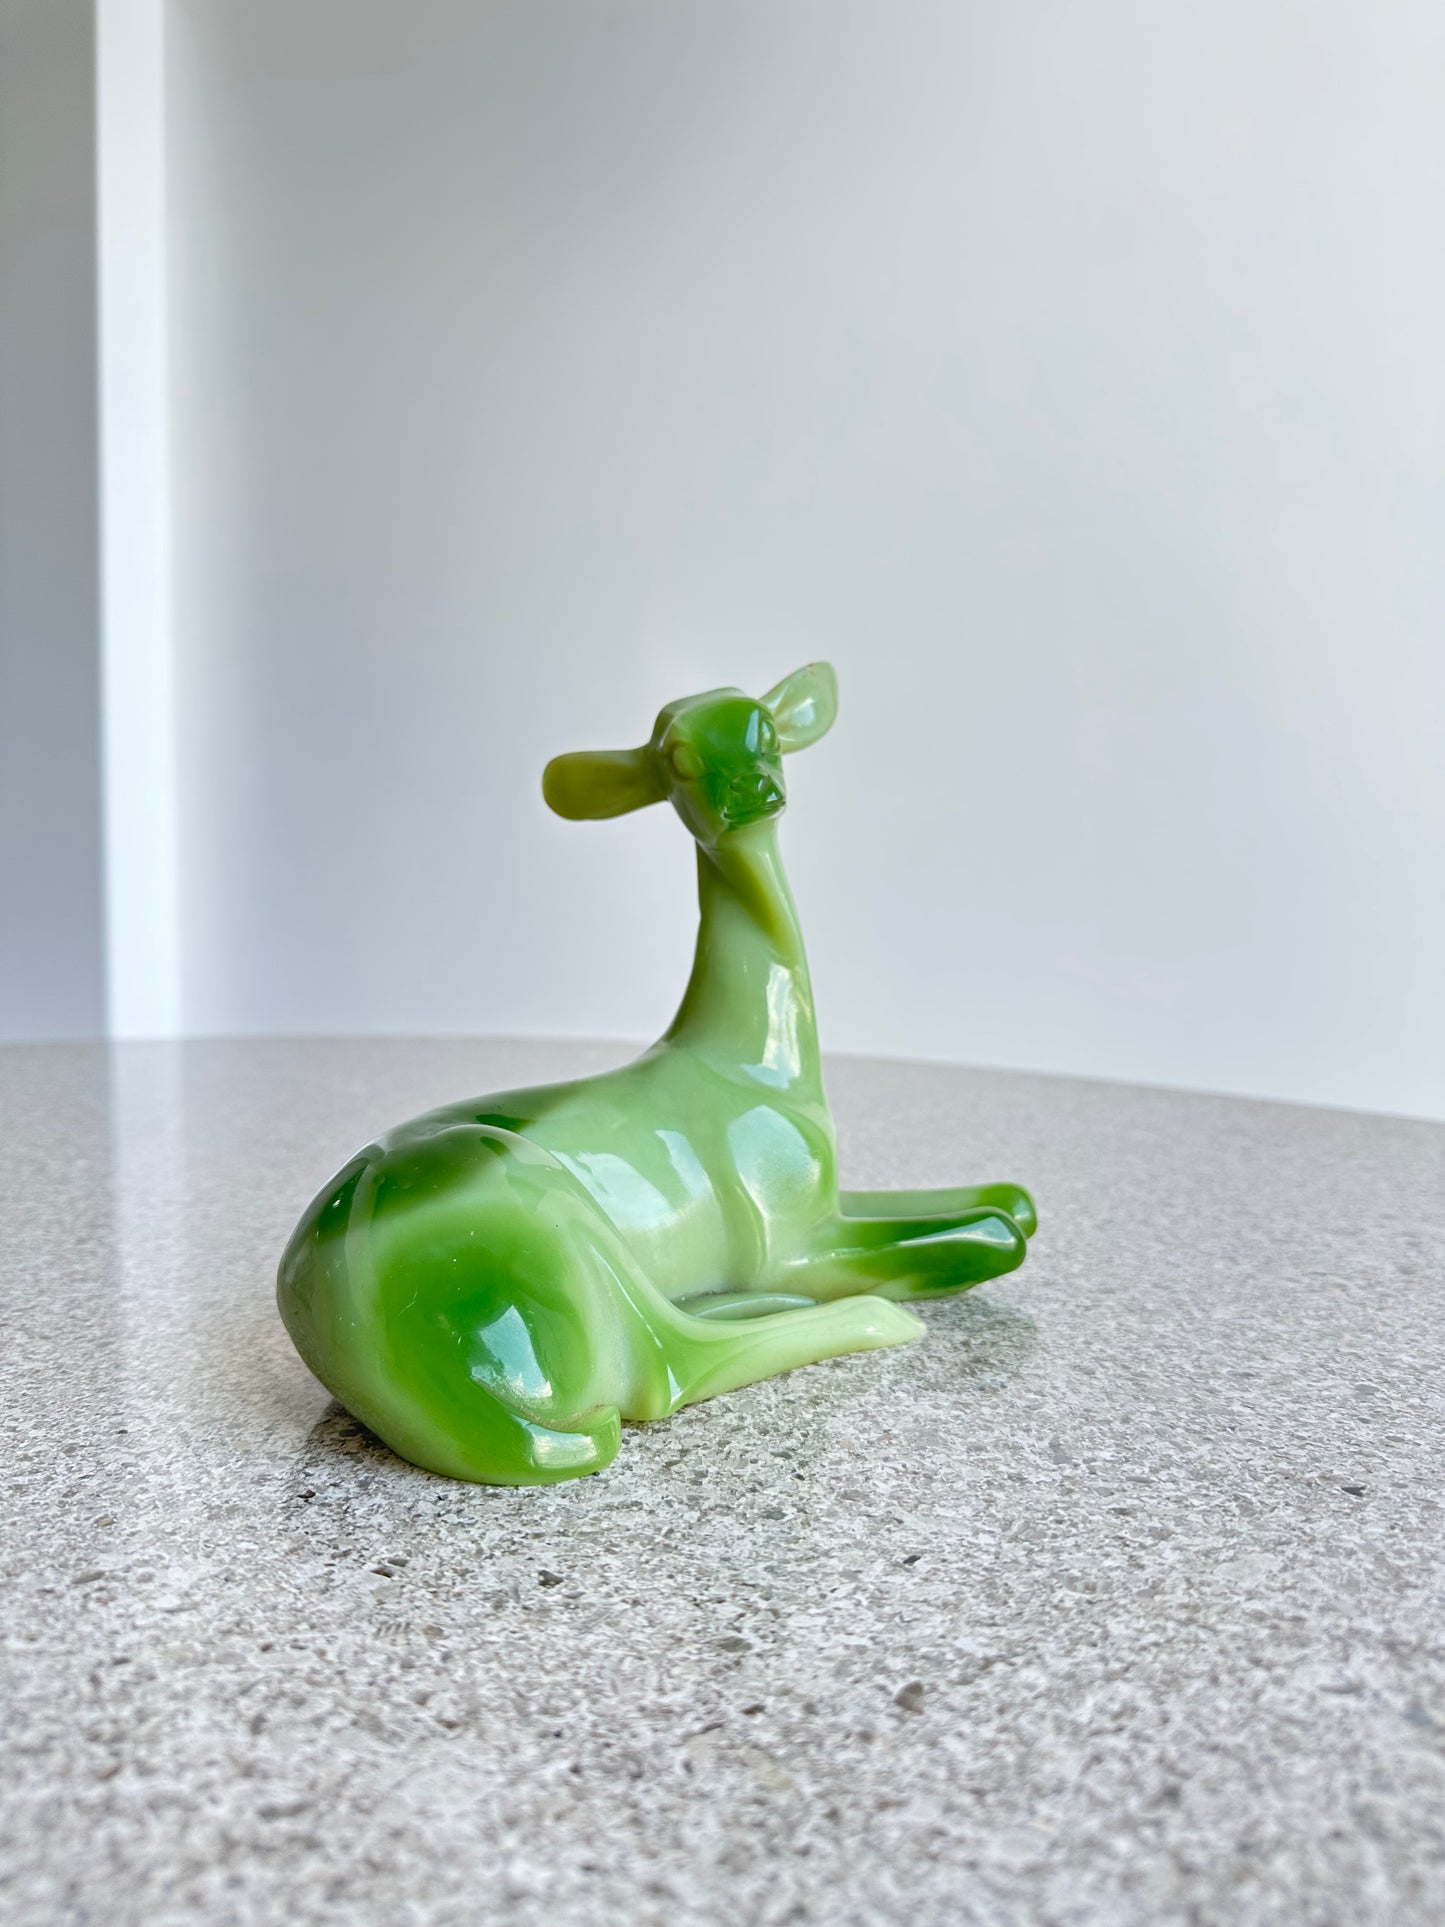 G.Ruggeri Italian Mid Century Modern Resin Green Animal Table Sculpture, 1960s